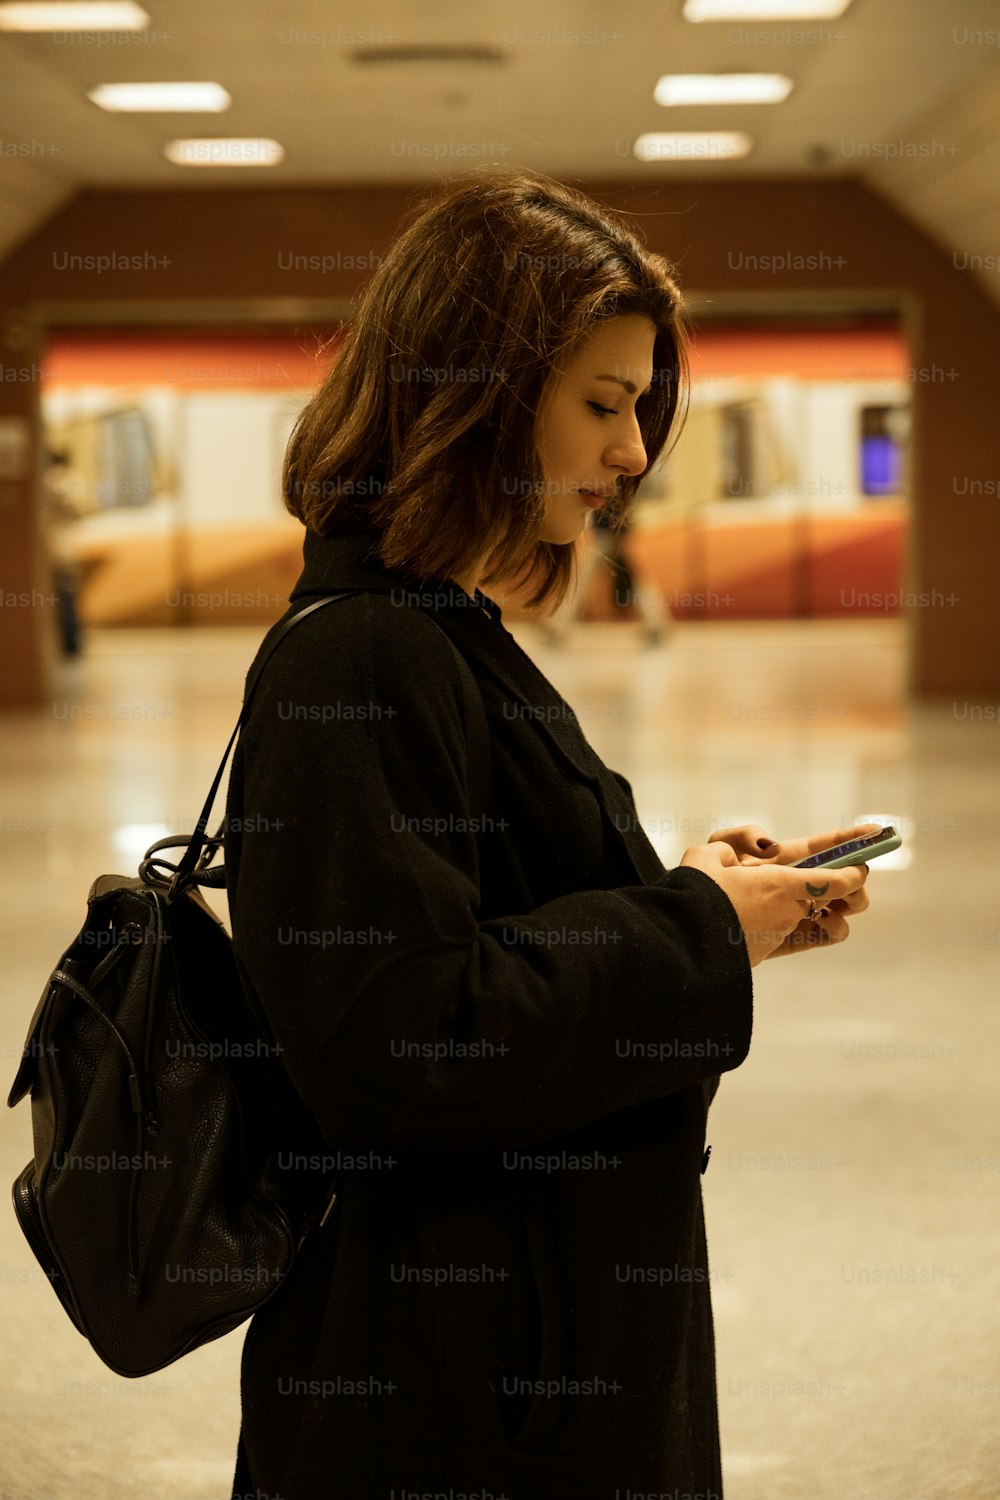 Una mujer parada en un edificio mirando su teléfono celular